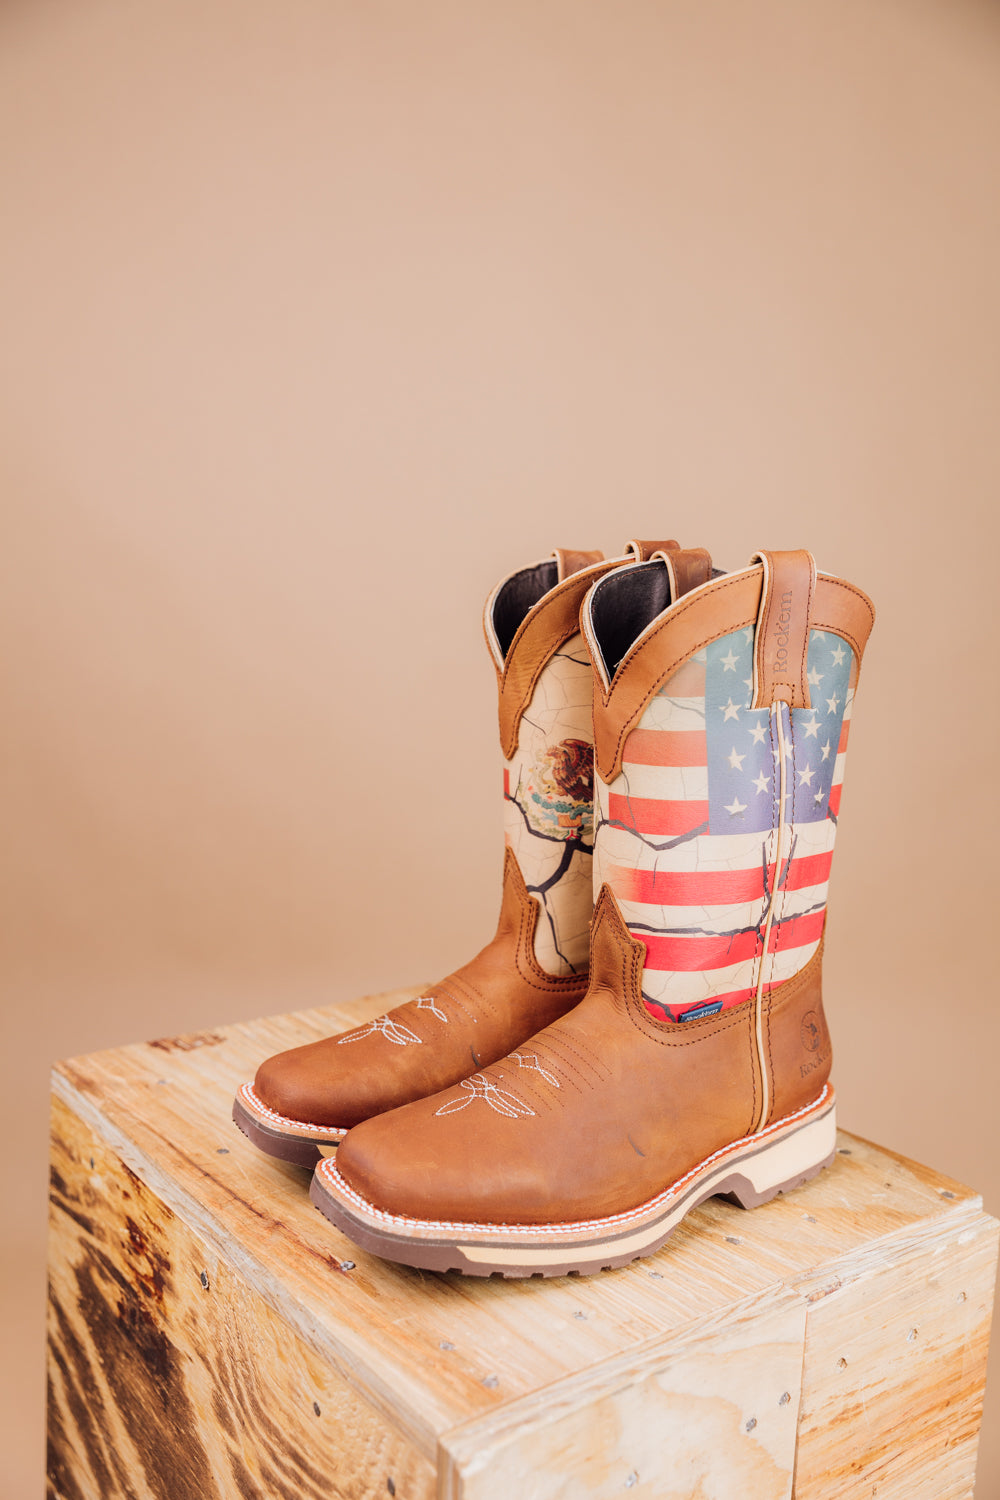 Dan Post Women's Stars & Stripes Western Boots - Snip Toe